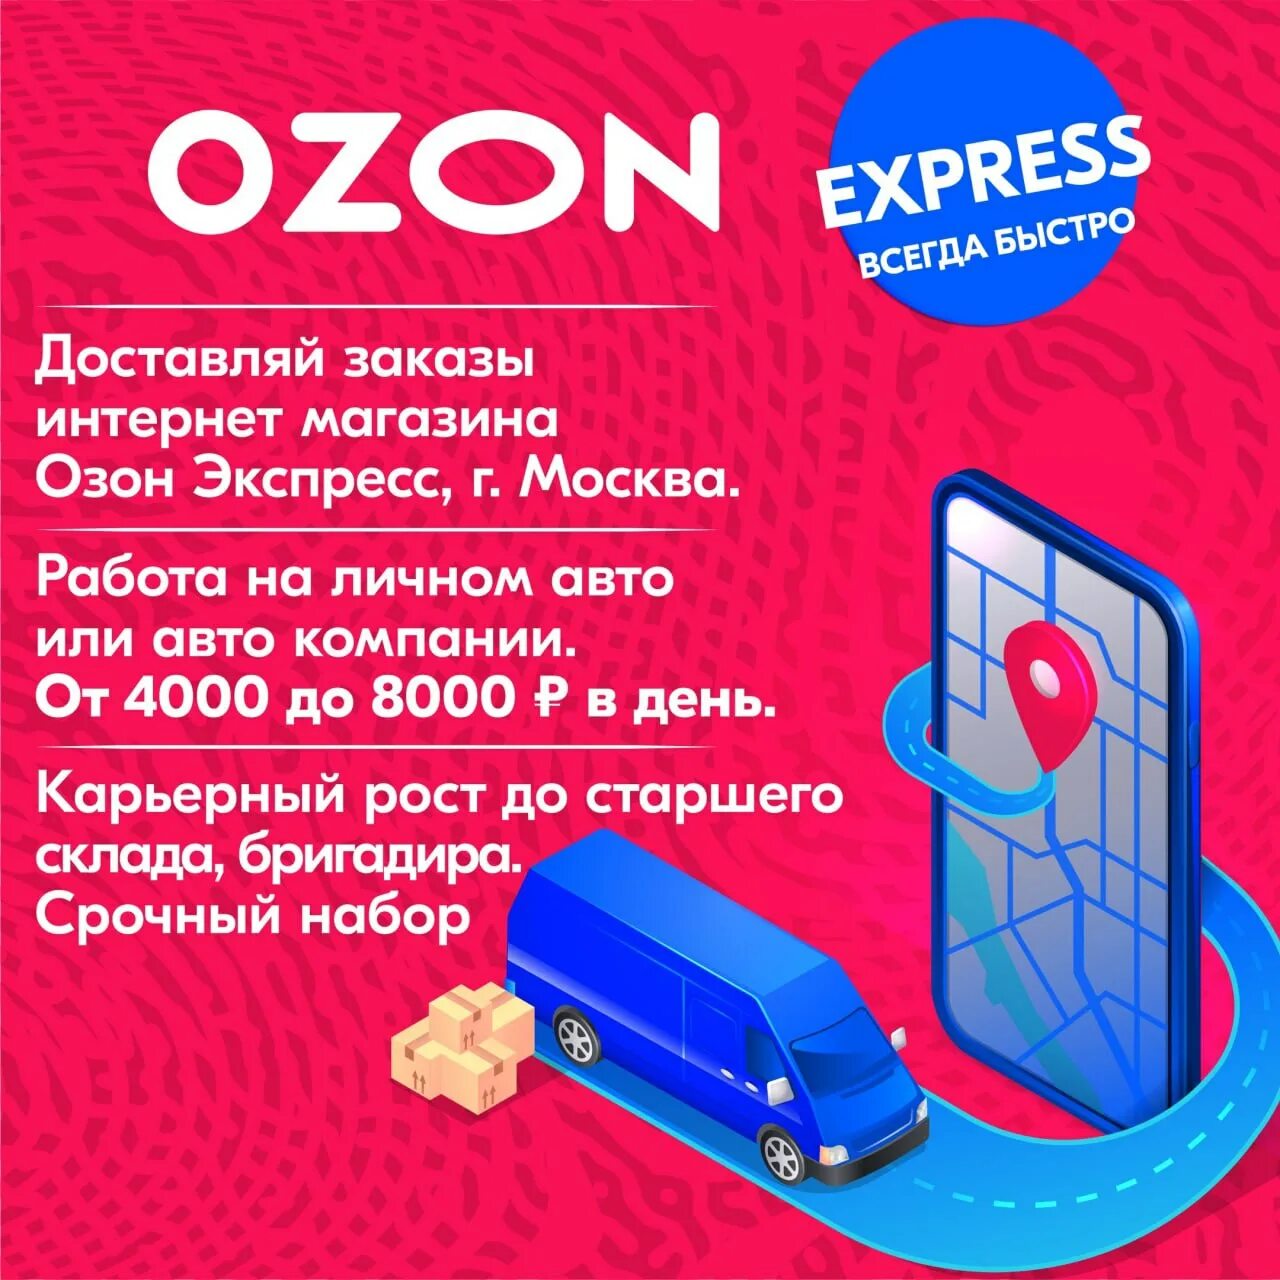 Купить телефон магазине озон. OZON экспресс. Озон экспресс курьер. Озон экспресс авто. Озон экспресс логотип.